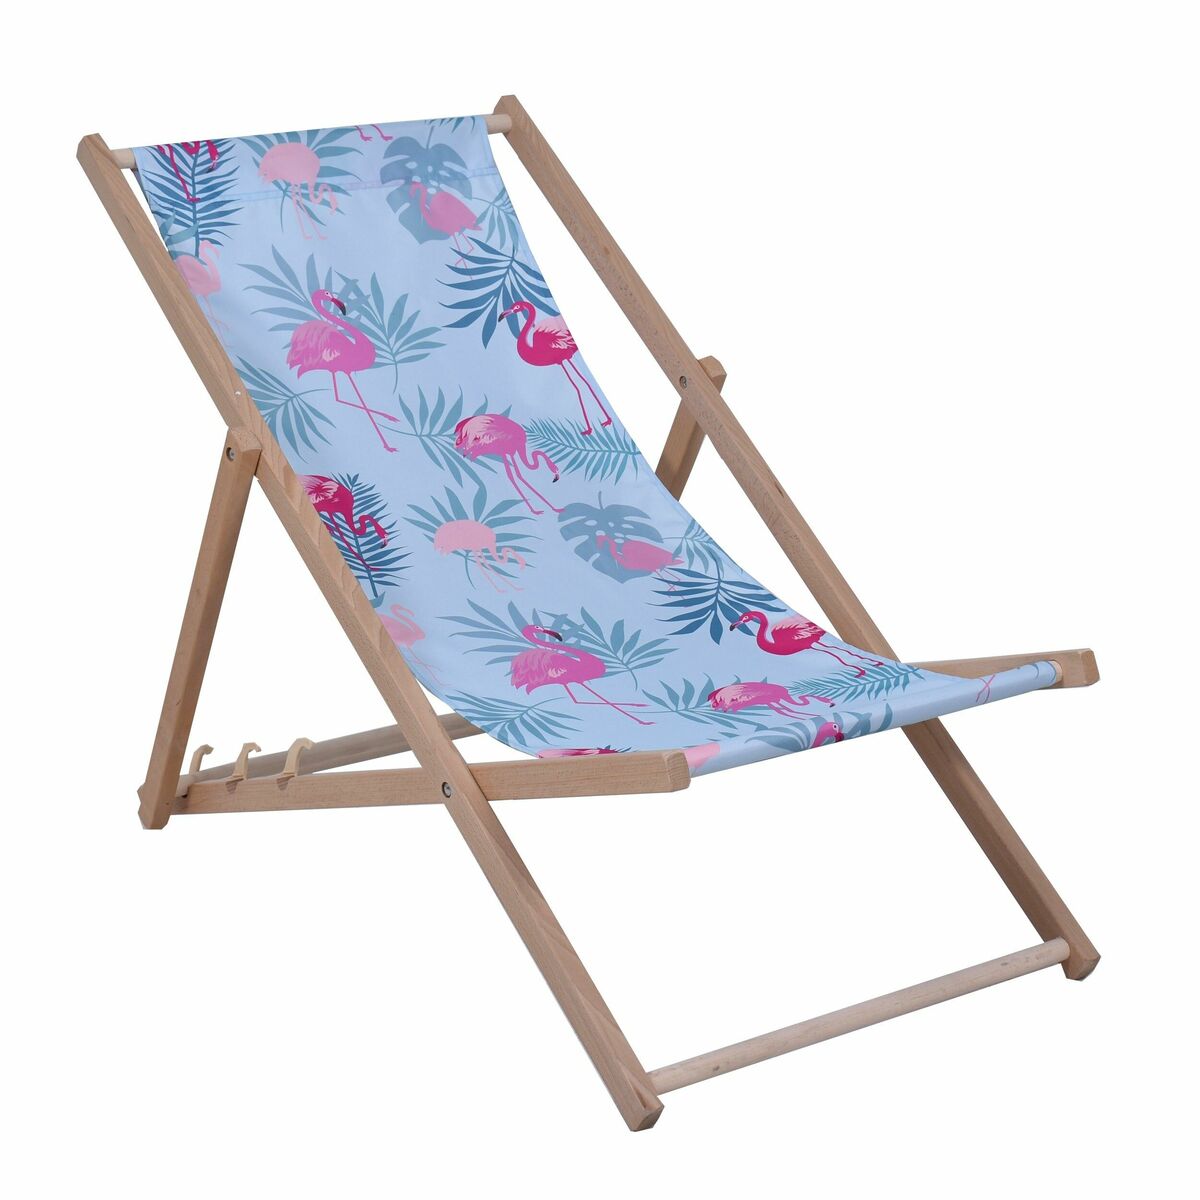 Leżak plażowy Flamingi drewniany